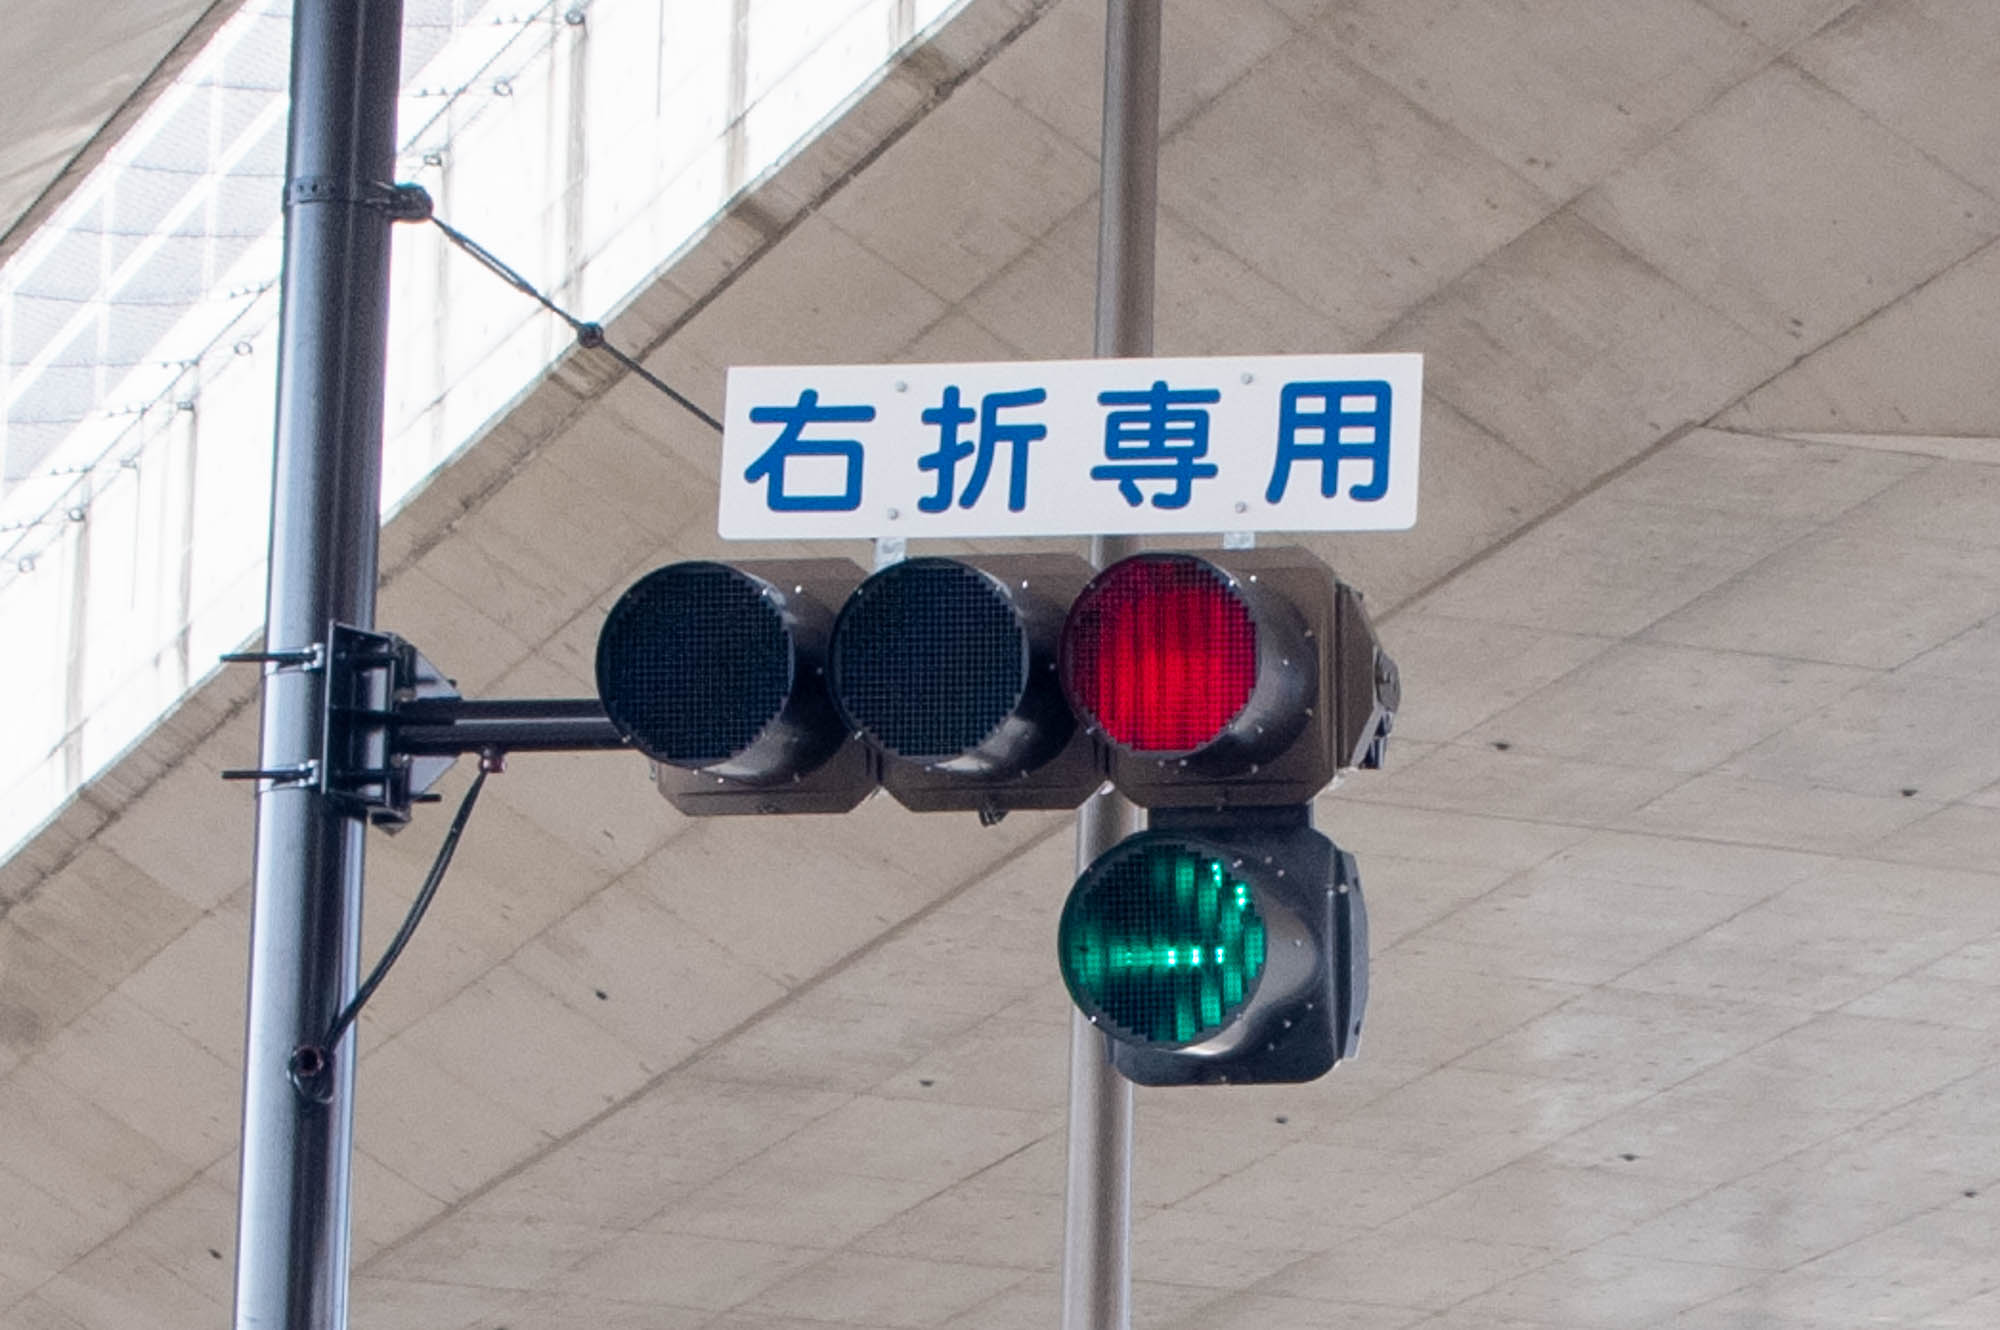 第二京阪の交差点 長尾台3丁目 に右折専用信号機が設置されてる 枚方つーしん